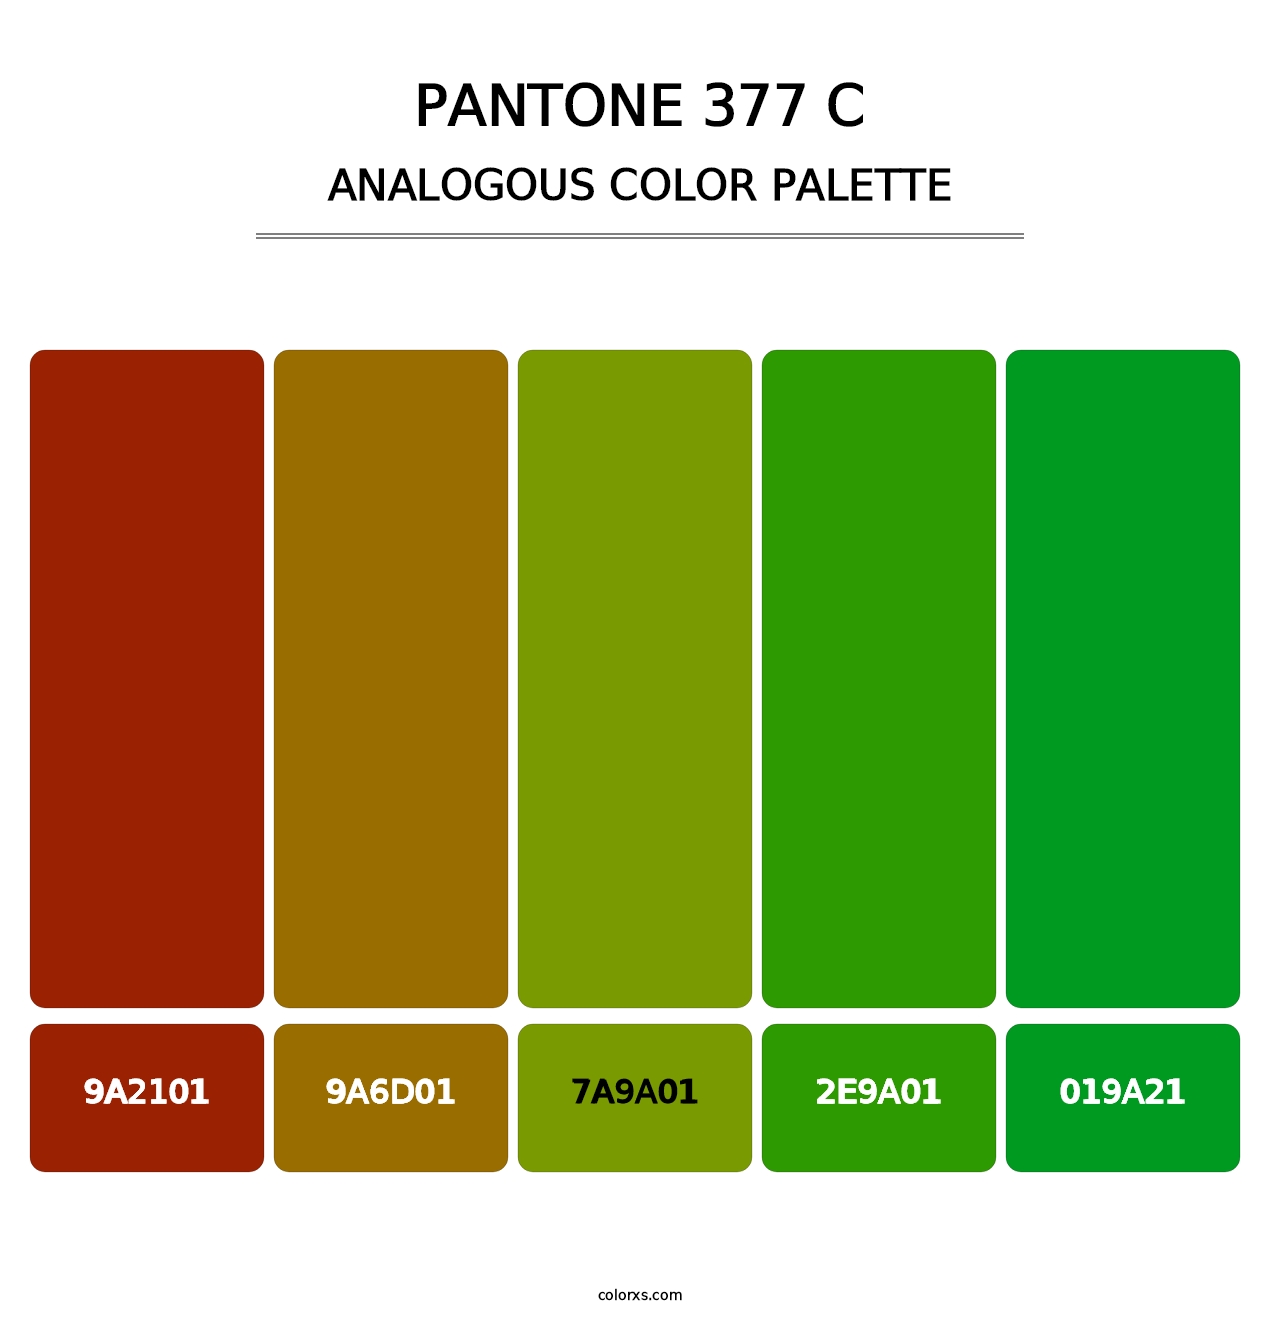 PANTONE 377 C - Analogous Color Palette